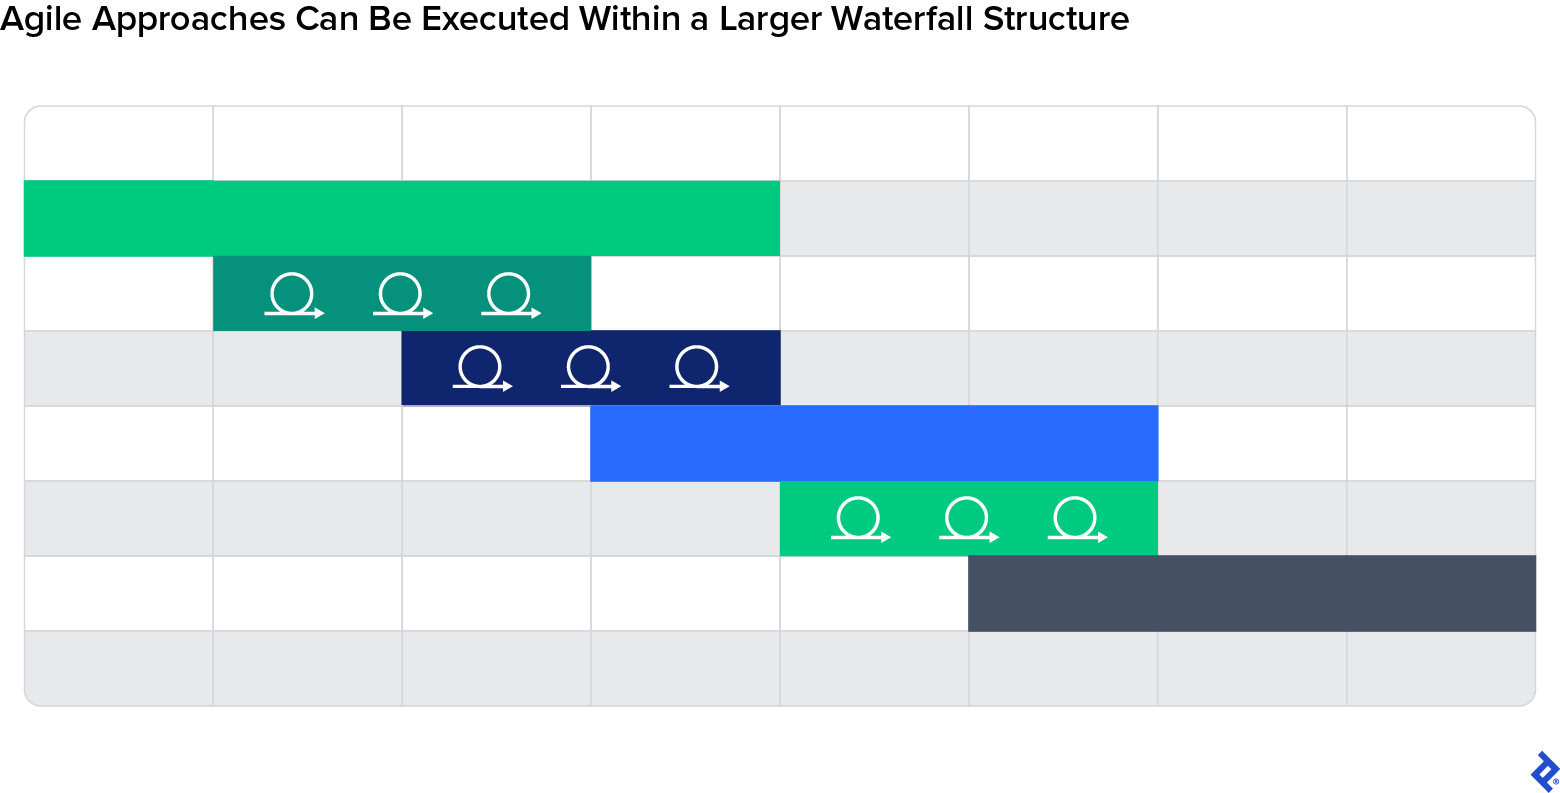 Les icônes Agile alternent avec des unités fixes représentant une structure hybride Agile-Waterfall.